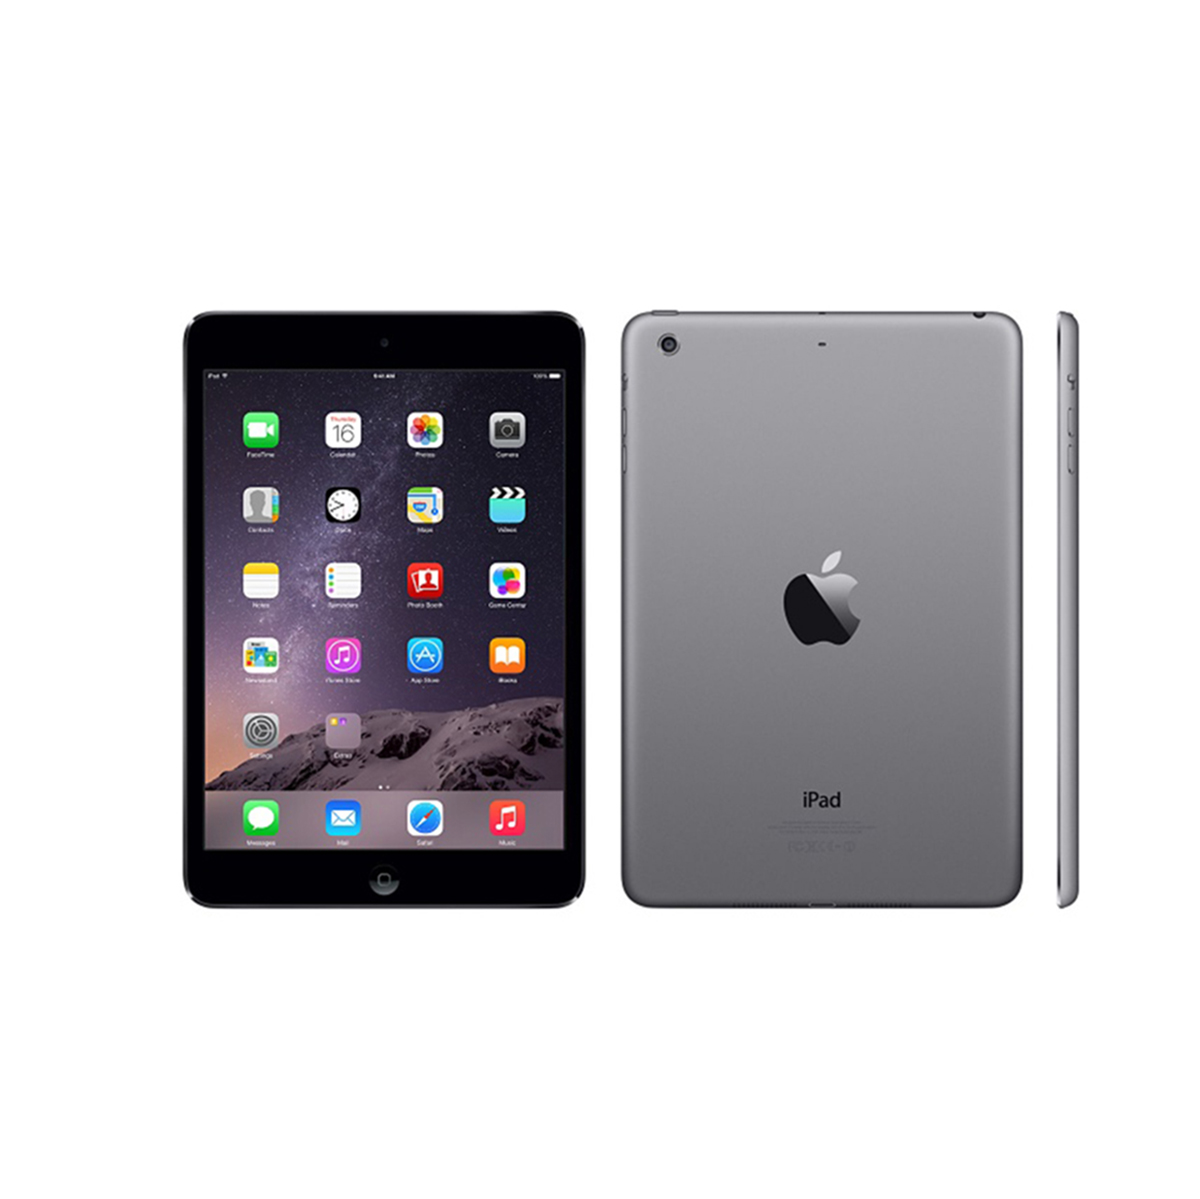 iPad Mini 2 (Retina Display) · 16 GB Wi-Fi + Cellular Space Gray ...